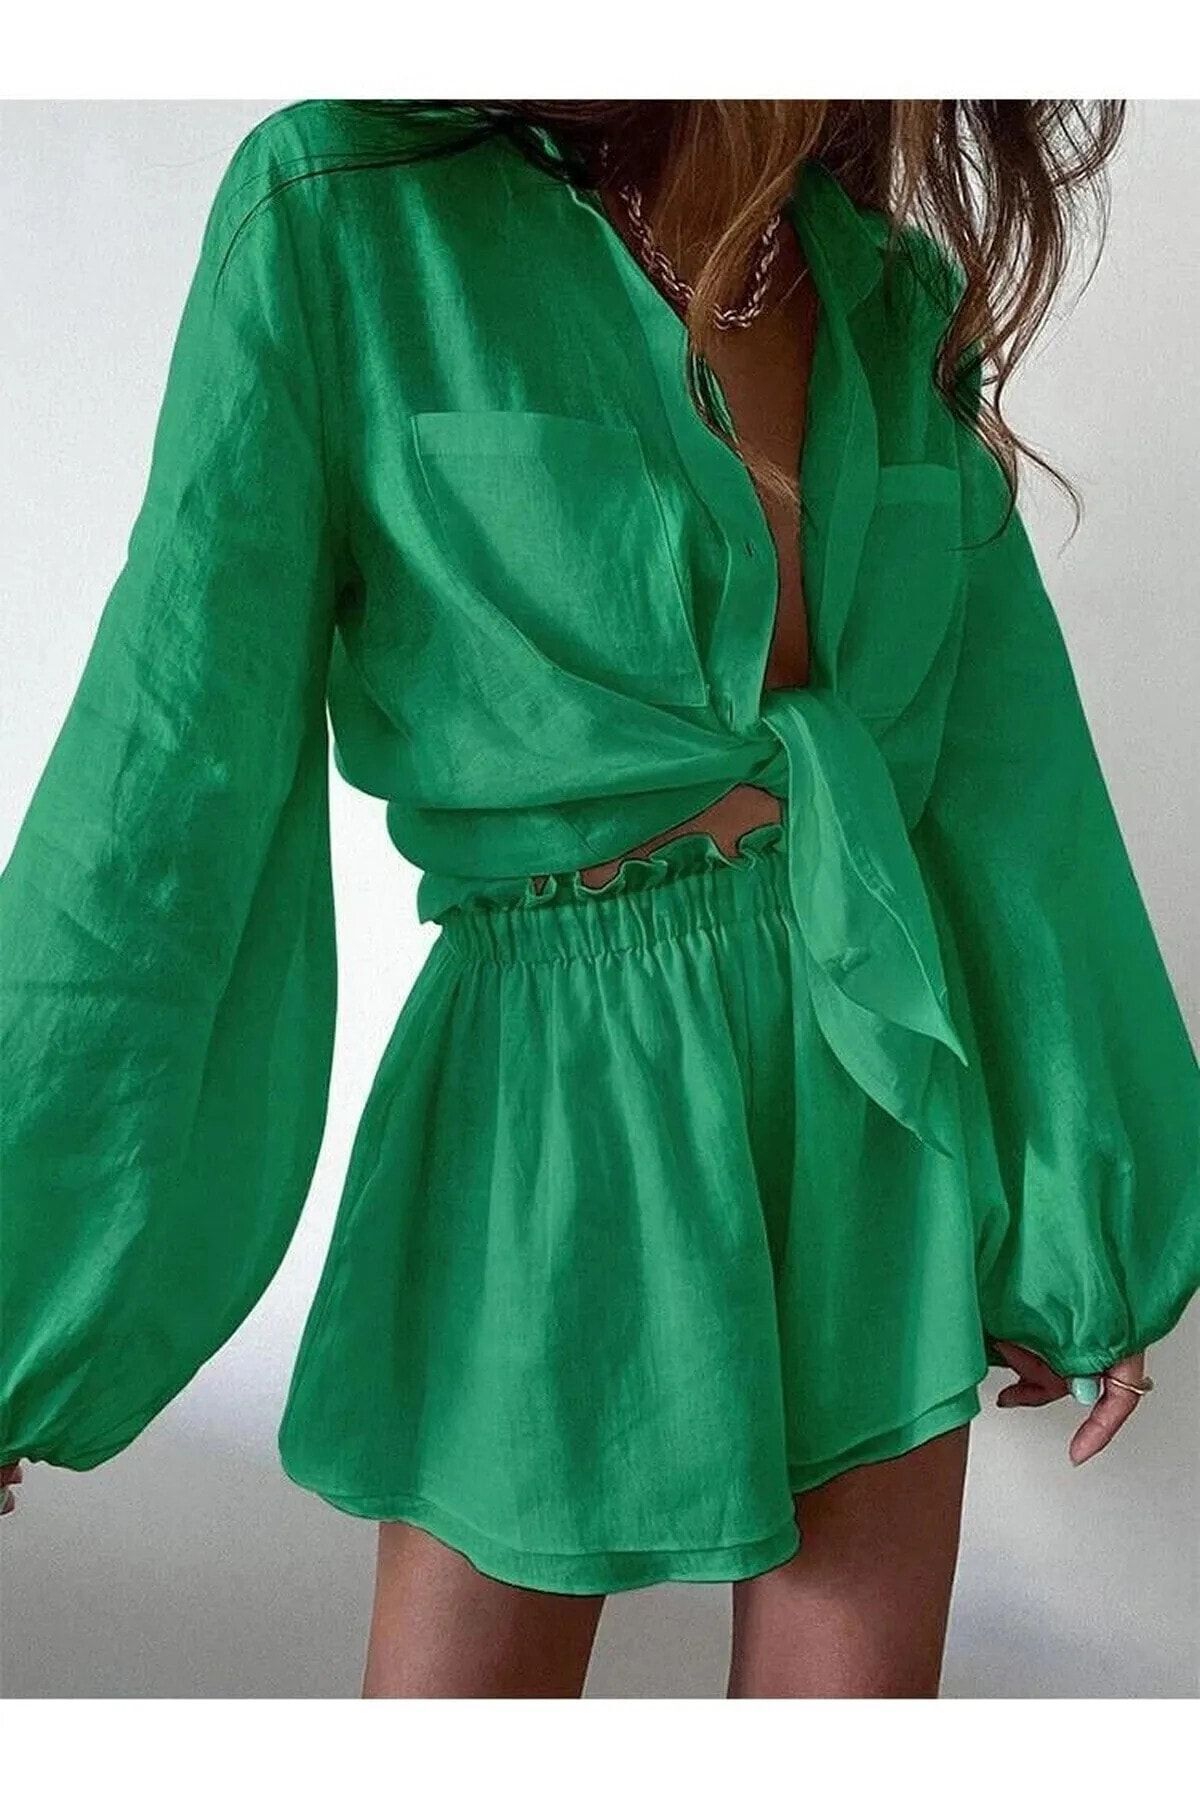 hazelin Kadın Yeşil Keten Şort Gömlek Alt Üst Takım Hzl23s-dsb110121